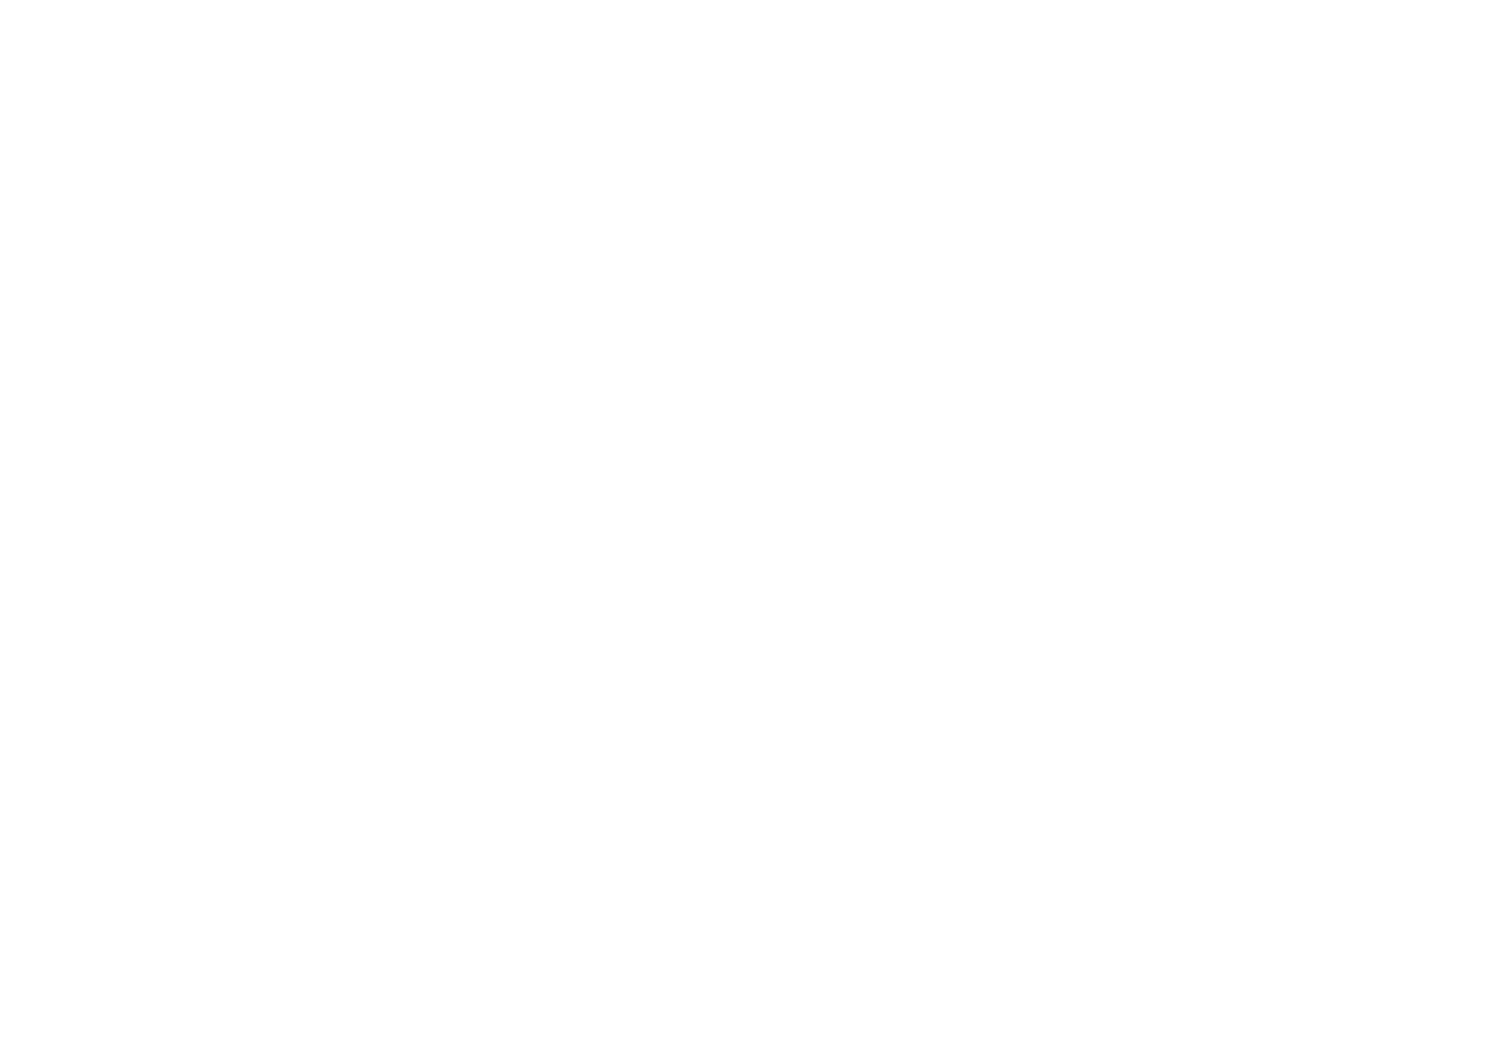 Product Sistema de inyección de odorante HVO | YZ Systems image